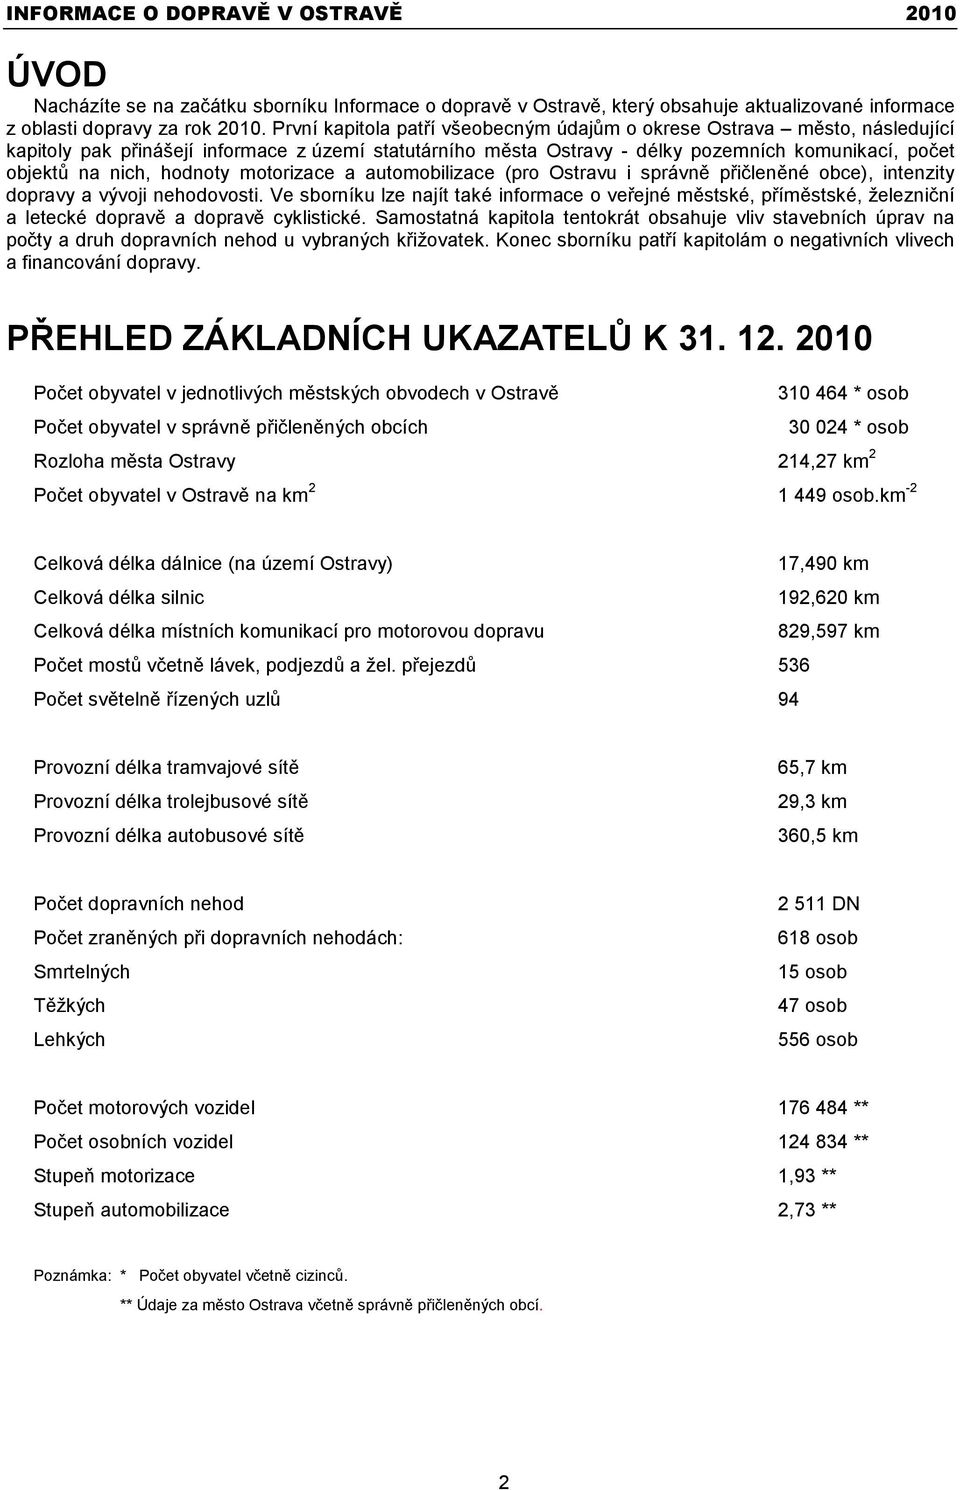 hodnoty motorizace a automobilizace (pro Ostravu i správně přičleněné obce), intenzity dopravy a vývoji nehodovosti.